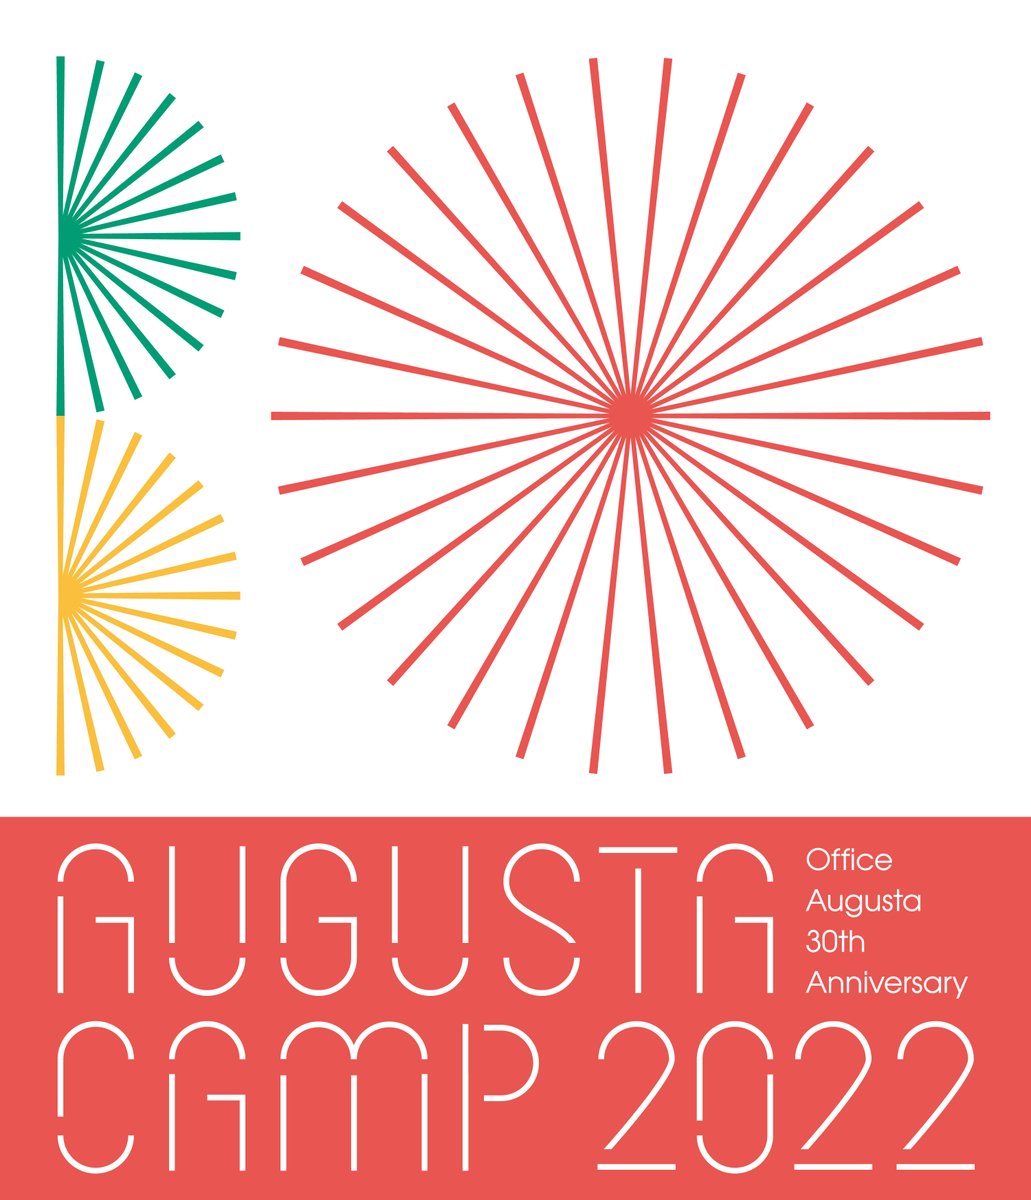 📀映像商品📀
「Augusta Camp 2022」Blu-ray　受注生産限定で、9月13日発売決定🎉

⛺3年ぶりの野外開催
🏆オフィスオーガスタ30周年
昨年の #オーガスタキャンプ の模様を是非お手元に！

UNIVERSAL MUSIC STORE：store.universal-music.co.jp/product/pdxa10…
Augusta Family Club： augfc.net/category/AC202…